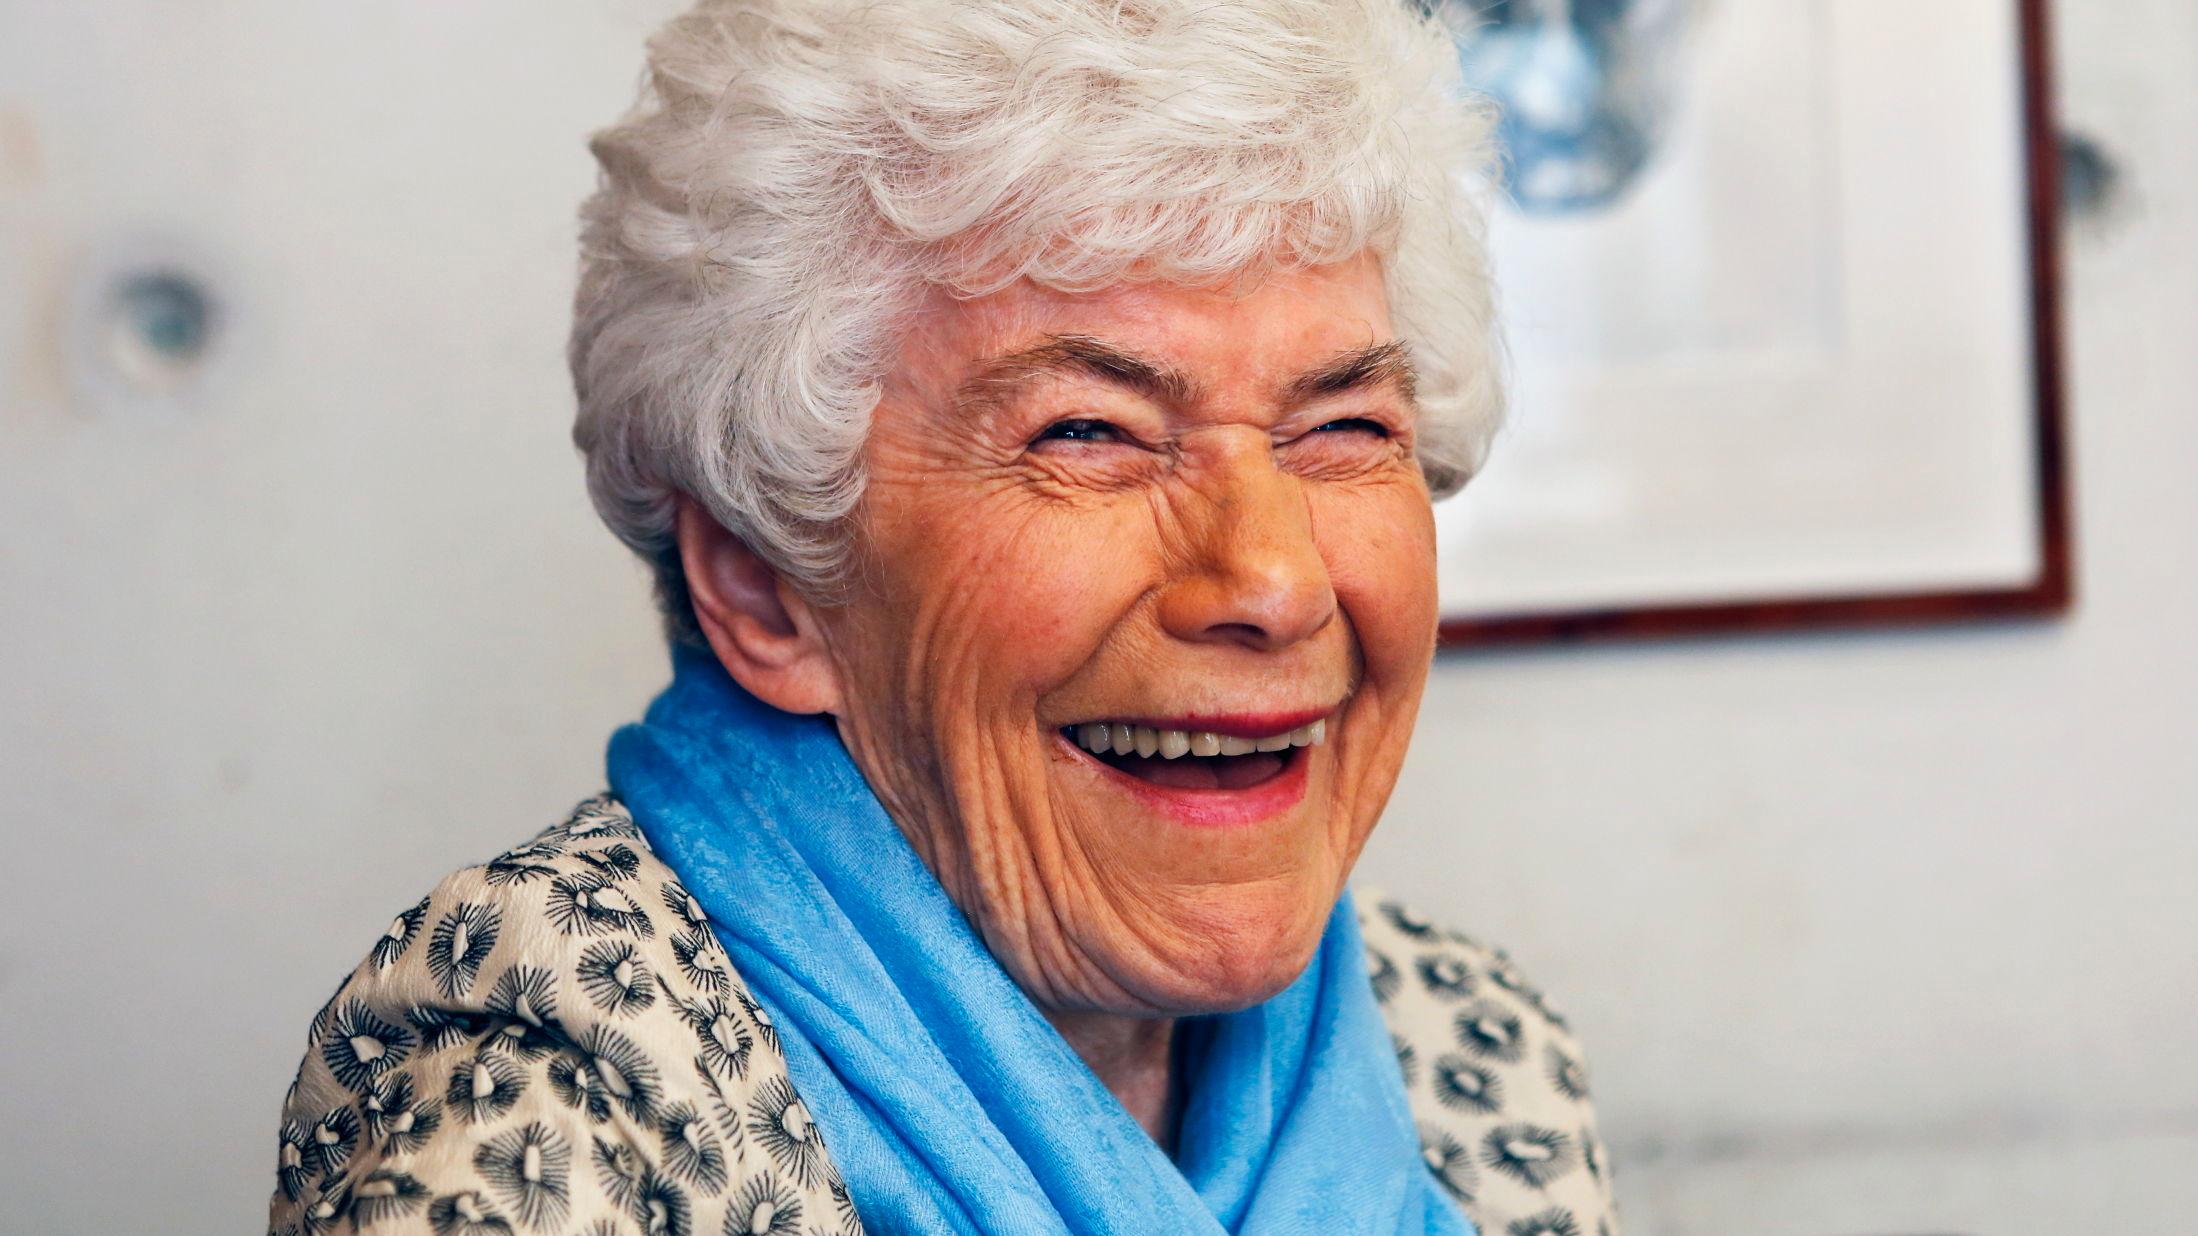 SPREK: Ingrid Espelid Hovig i anledning sin 90-årsdag i 2014. Foto: Nils Bjåland/VG